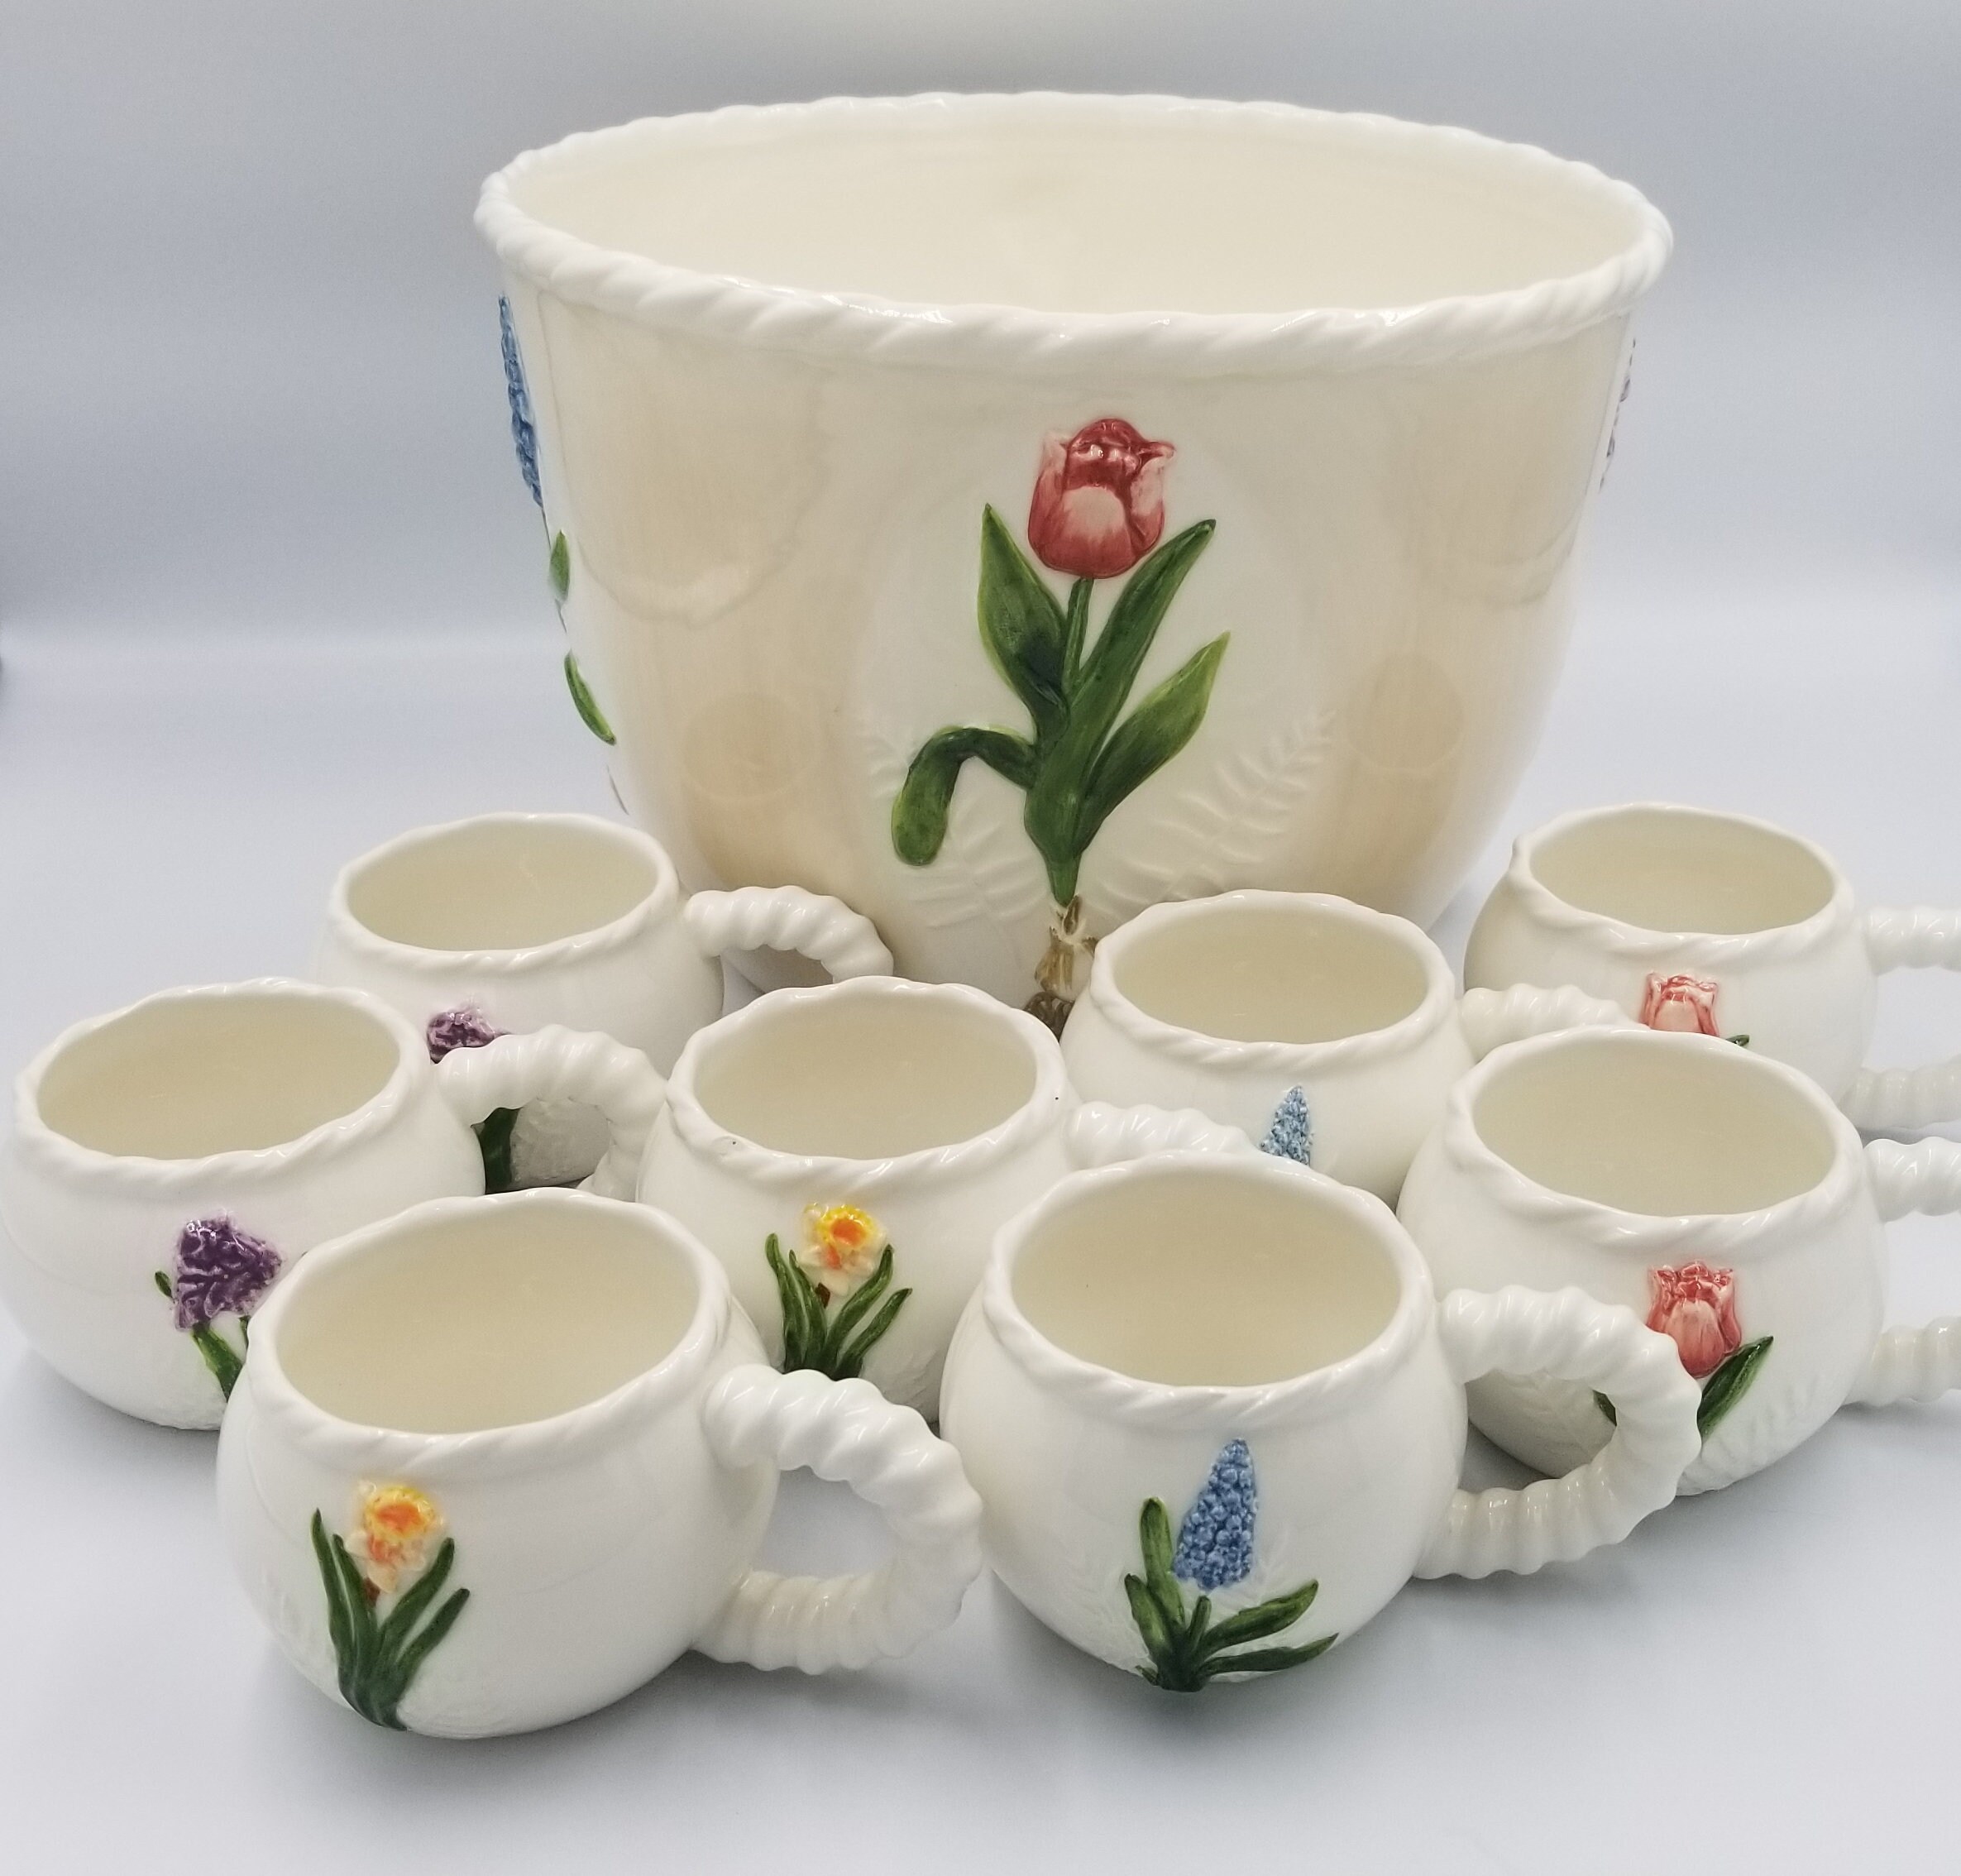 Vintage White Milk Glass Punchbowl & 12 Tea Cup Set Spring Summer